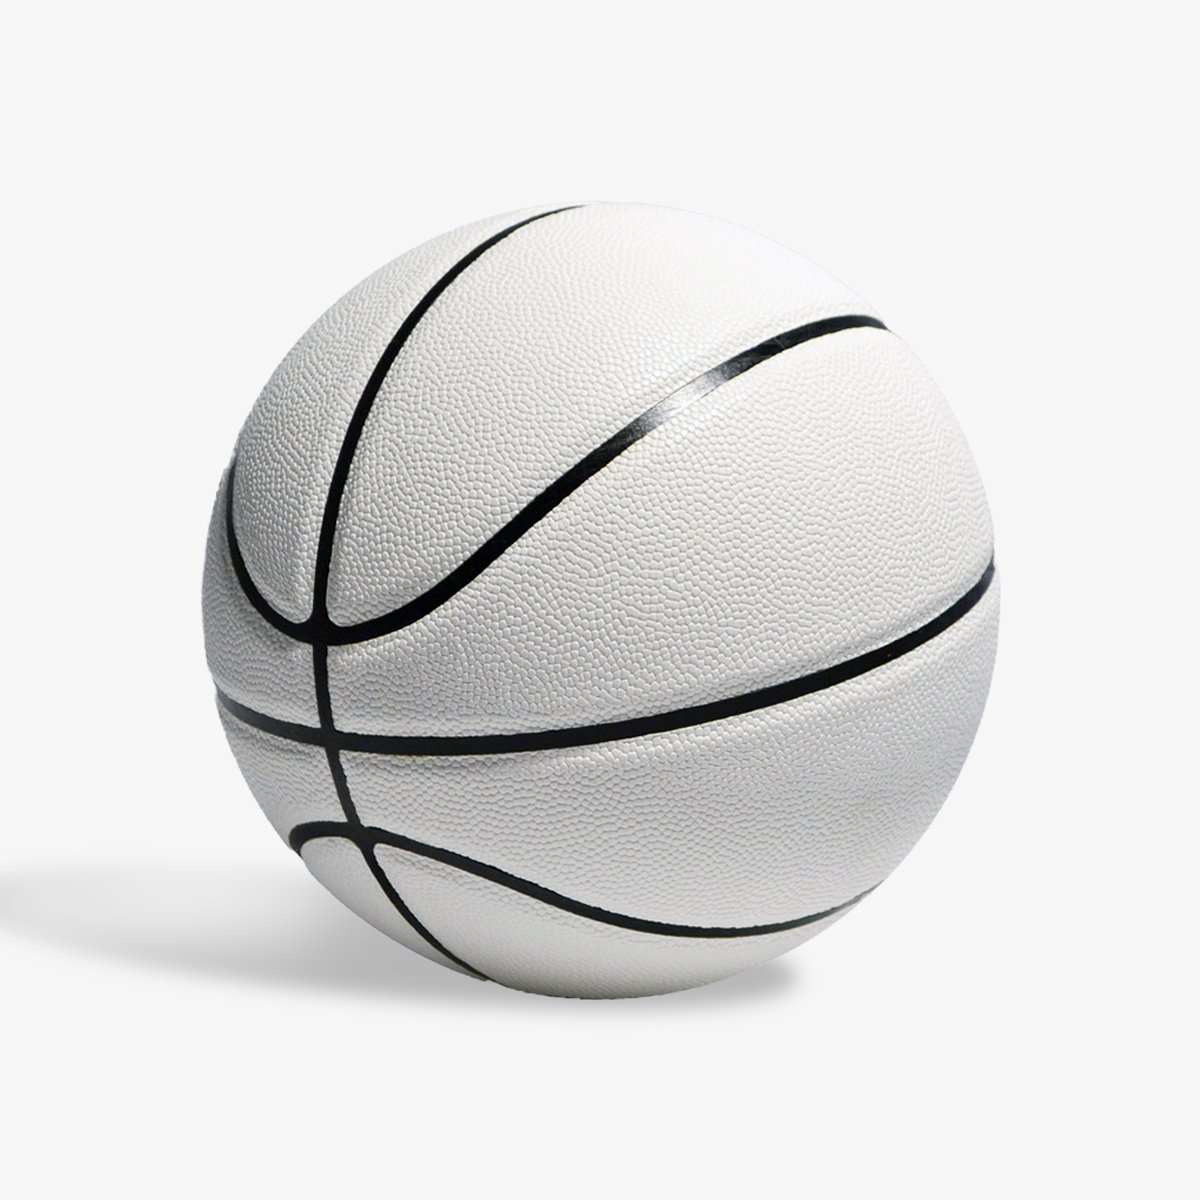 Белый баскетбольный мяч Swish